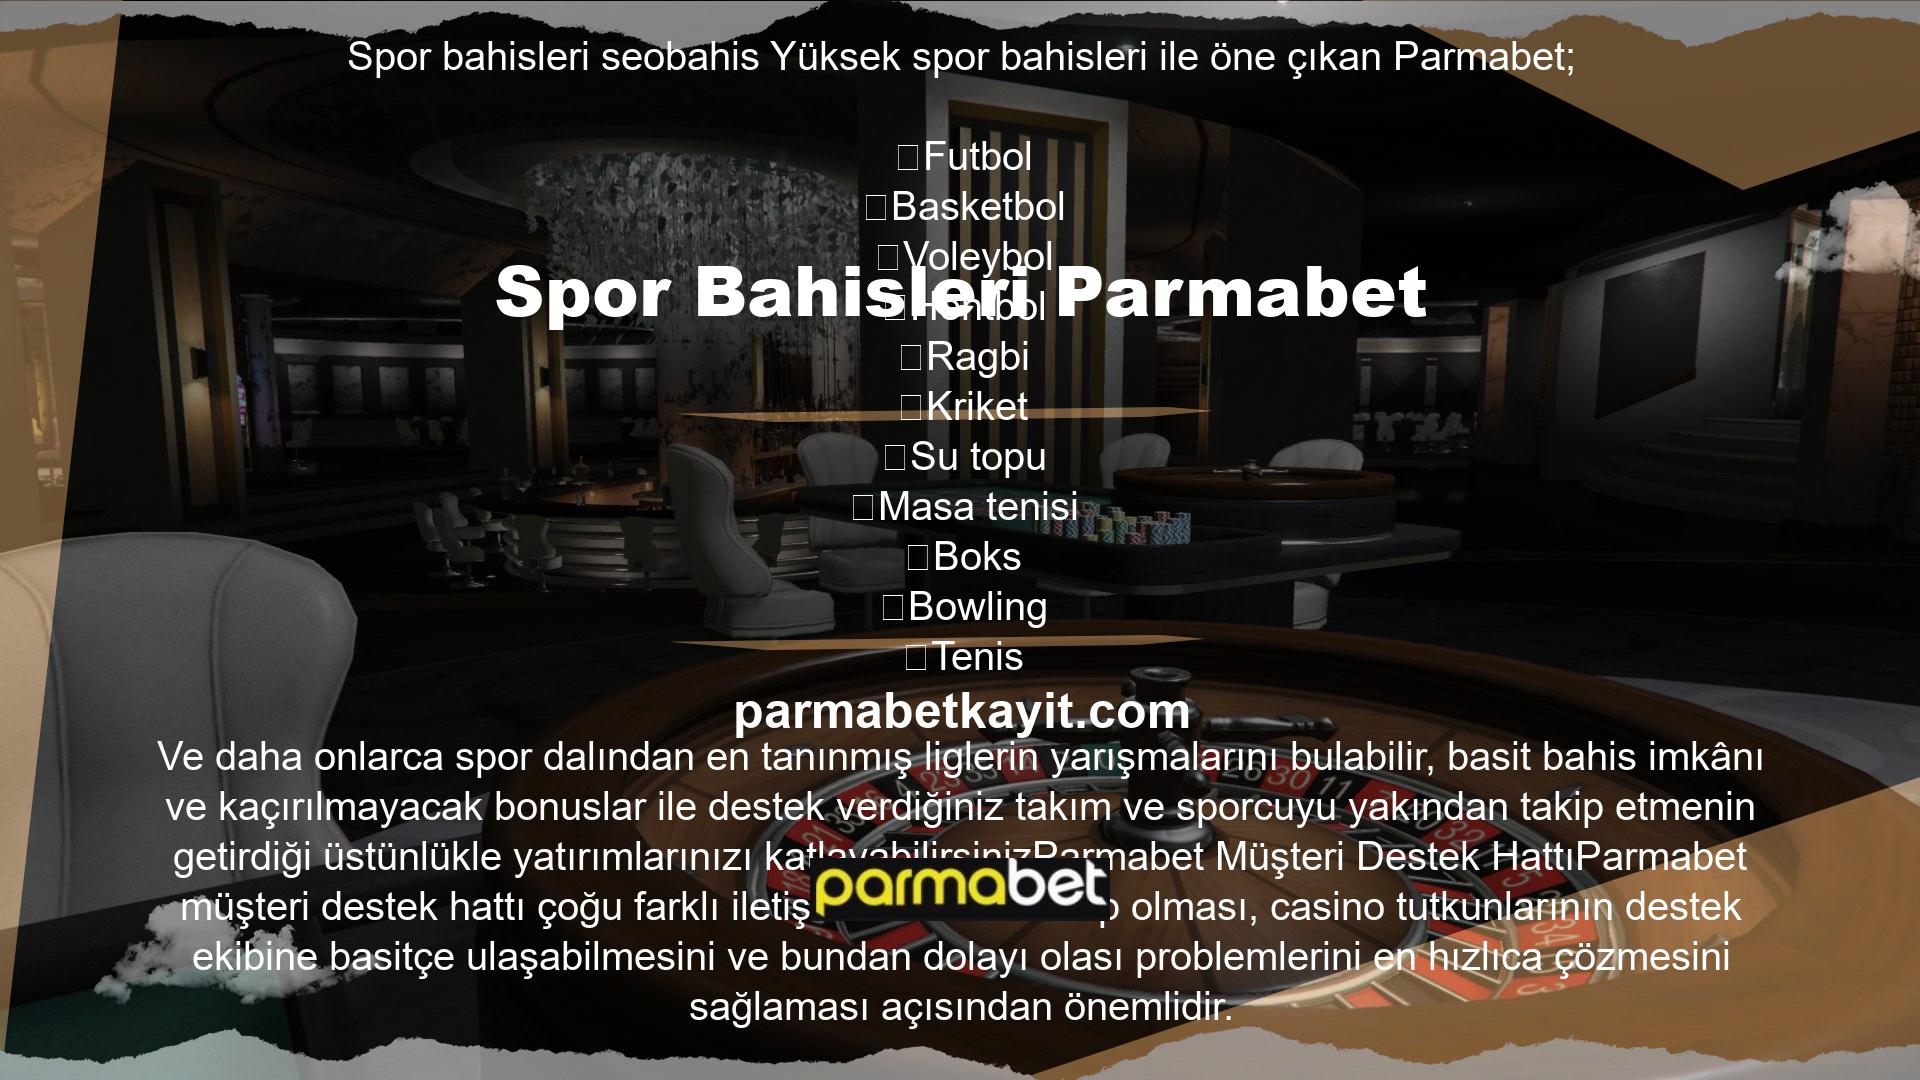 Parmabet Müşteri Destek HattıTürkiye’deki casino sitelerine profesyonel müşteri hizmetleri kavramını Parmabet getirmiştir ve müşteri hizmetlerini de bu doğrultuda biçimlendiren Parmabet , üyelerinin destek isteklerine rekor bir süre olan 30 saniyede cevap verir